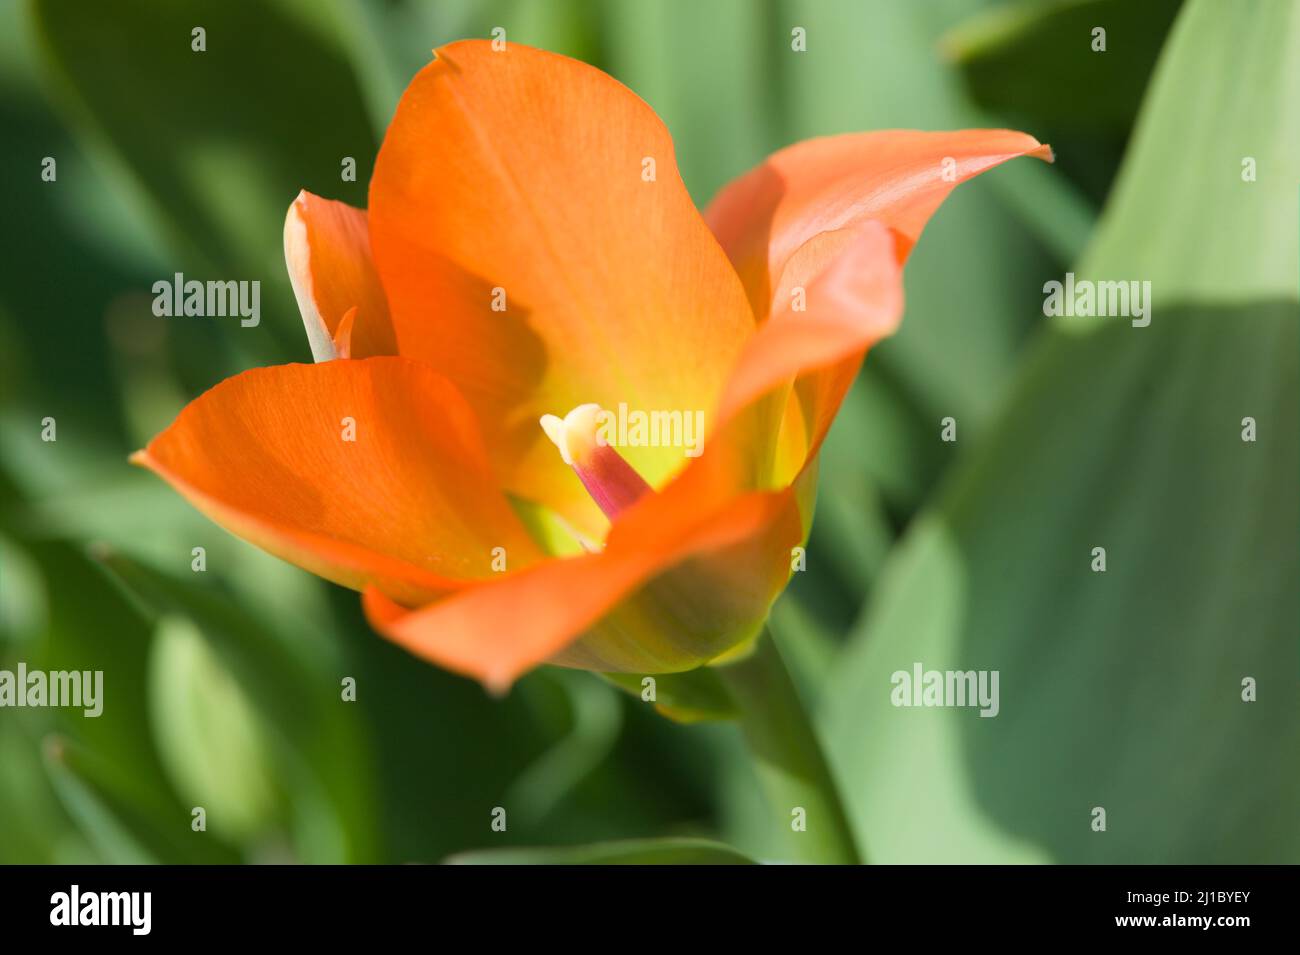 Close-up of a Spring Flowering Orange Emperor Tulip /Tulipa Orange Emperor Stock Photo